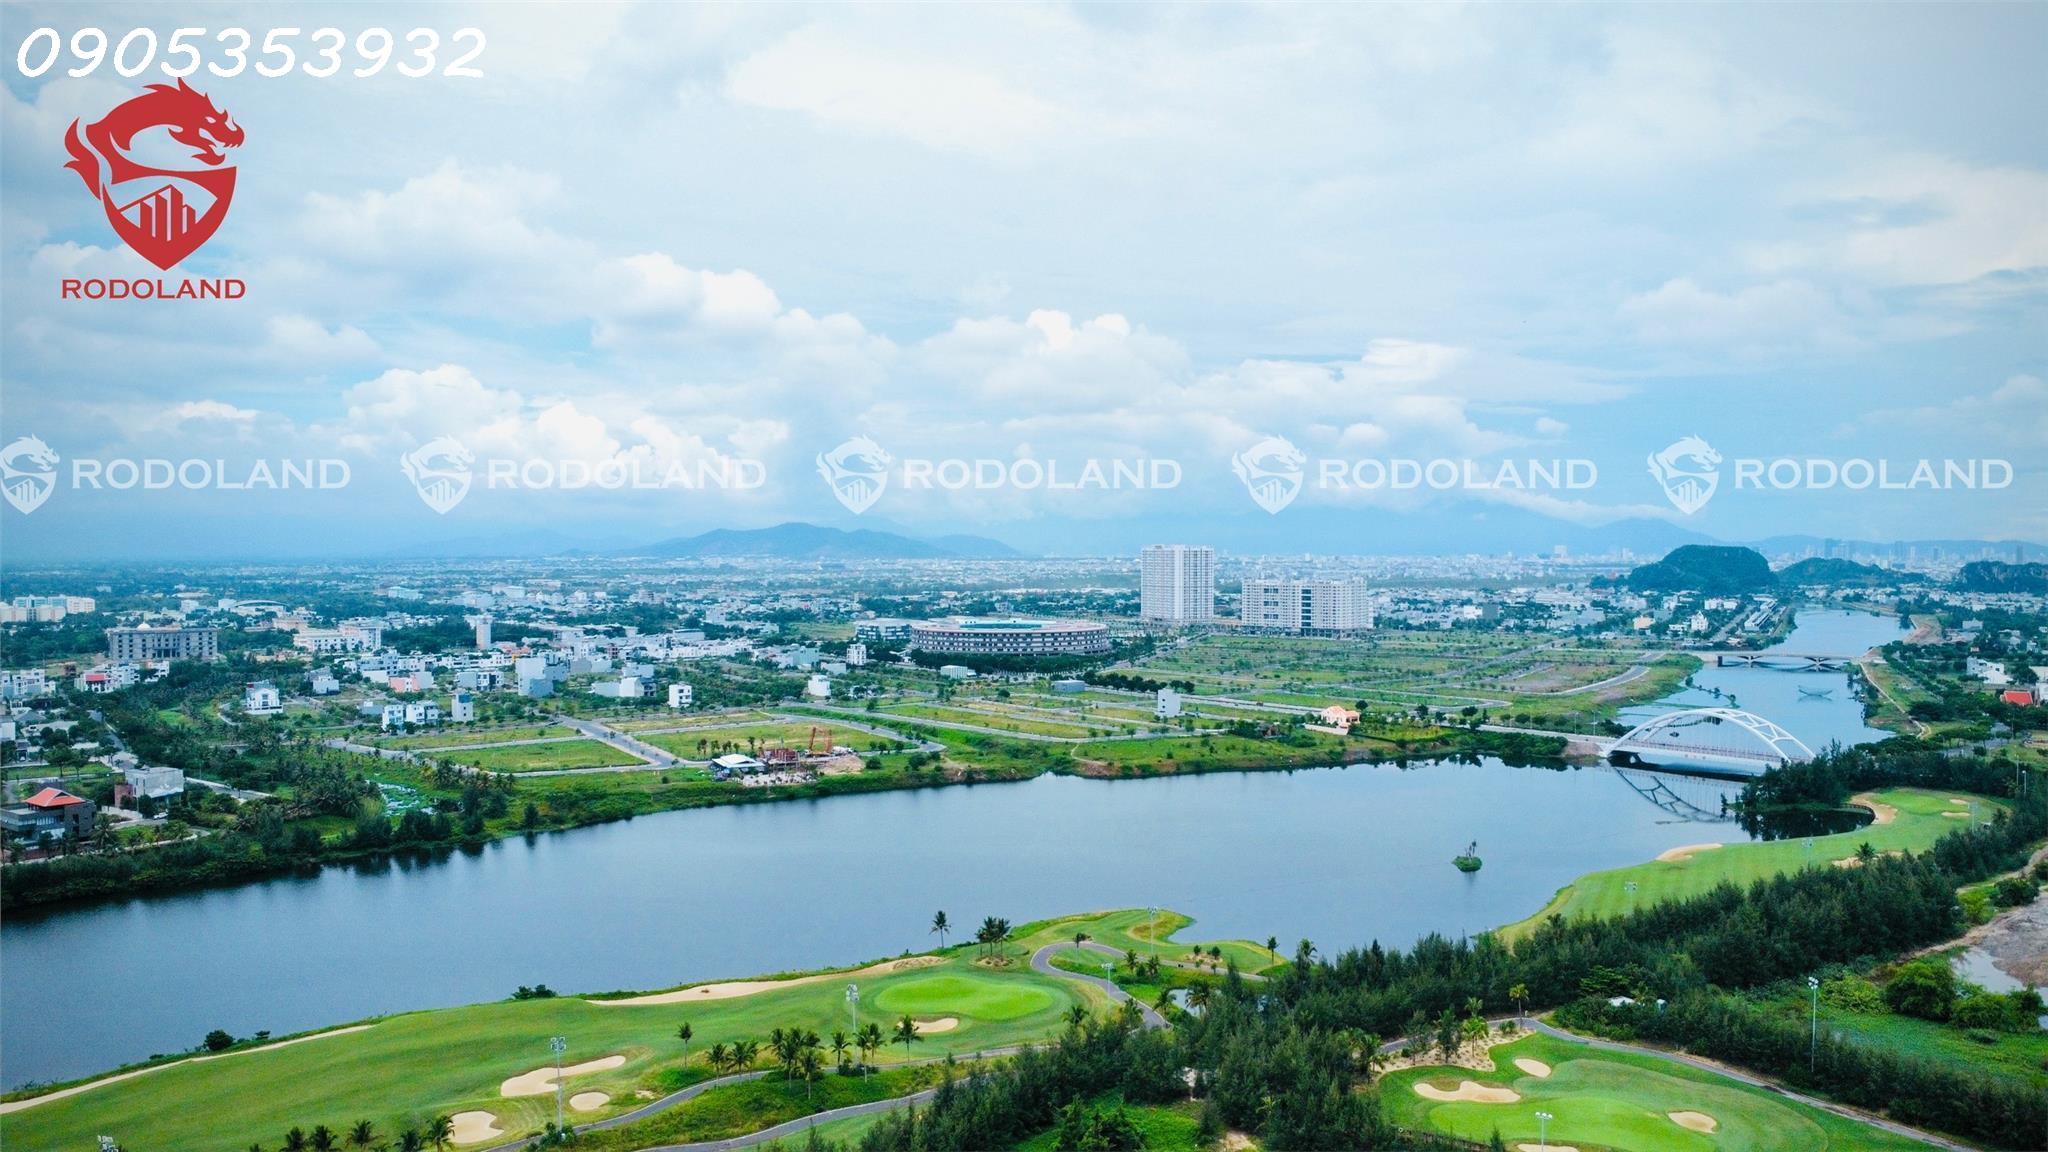 Bán 288m2 (12mx24m) đất biệt thự FPT Đà Nẵng giá 6.4 tỷ.Liên hệ: 0905.31.89.88 3